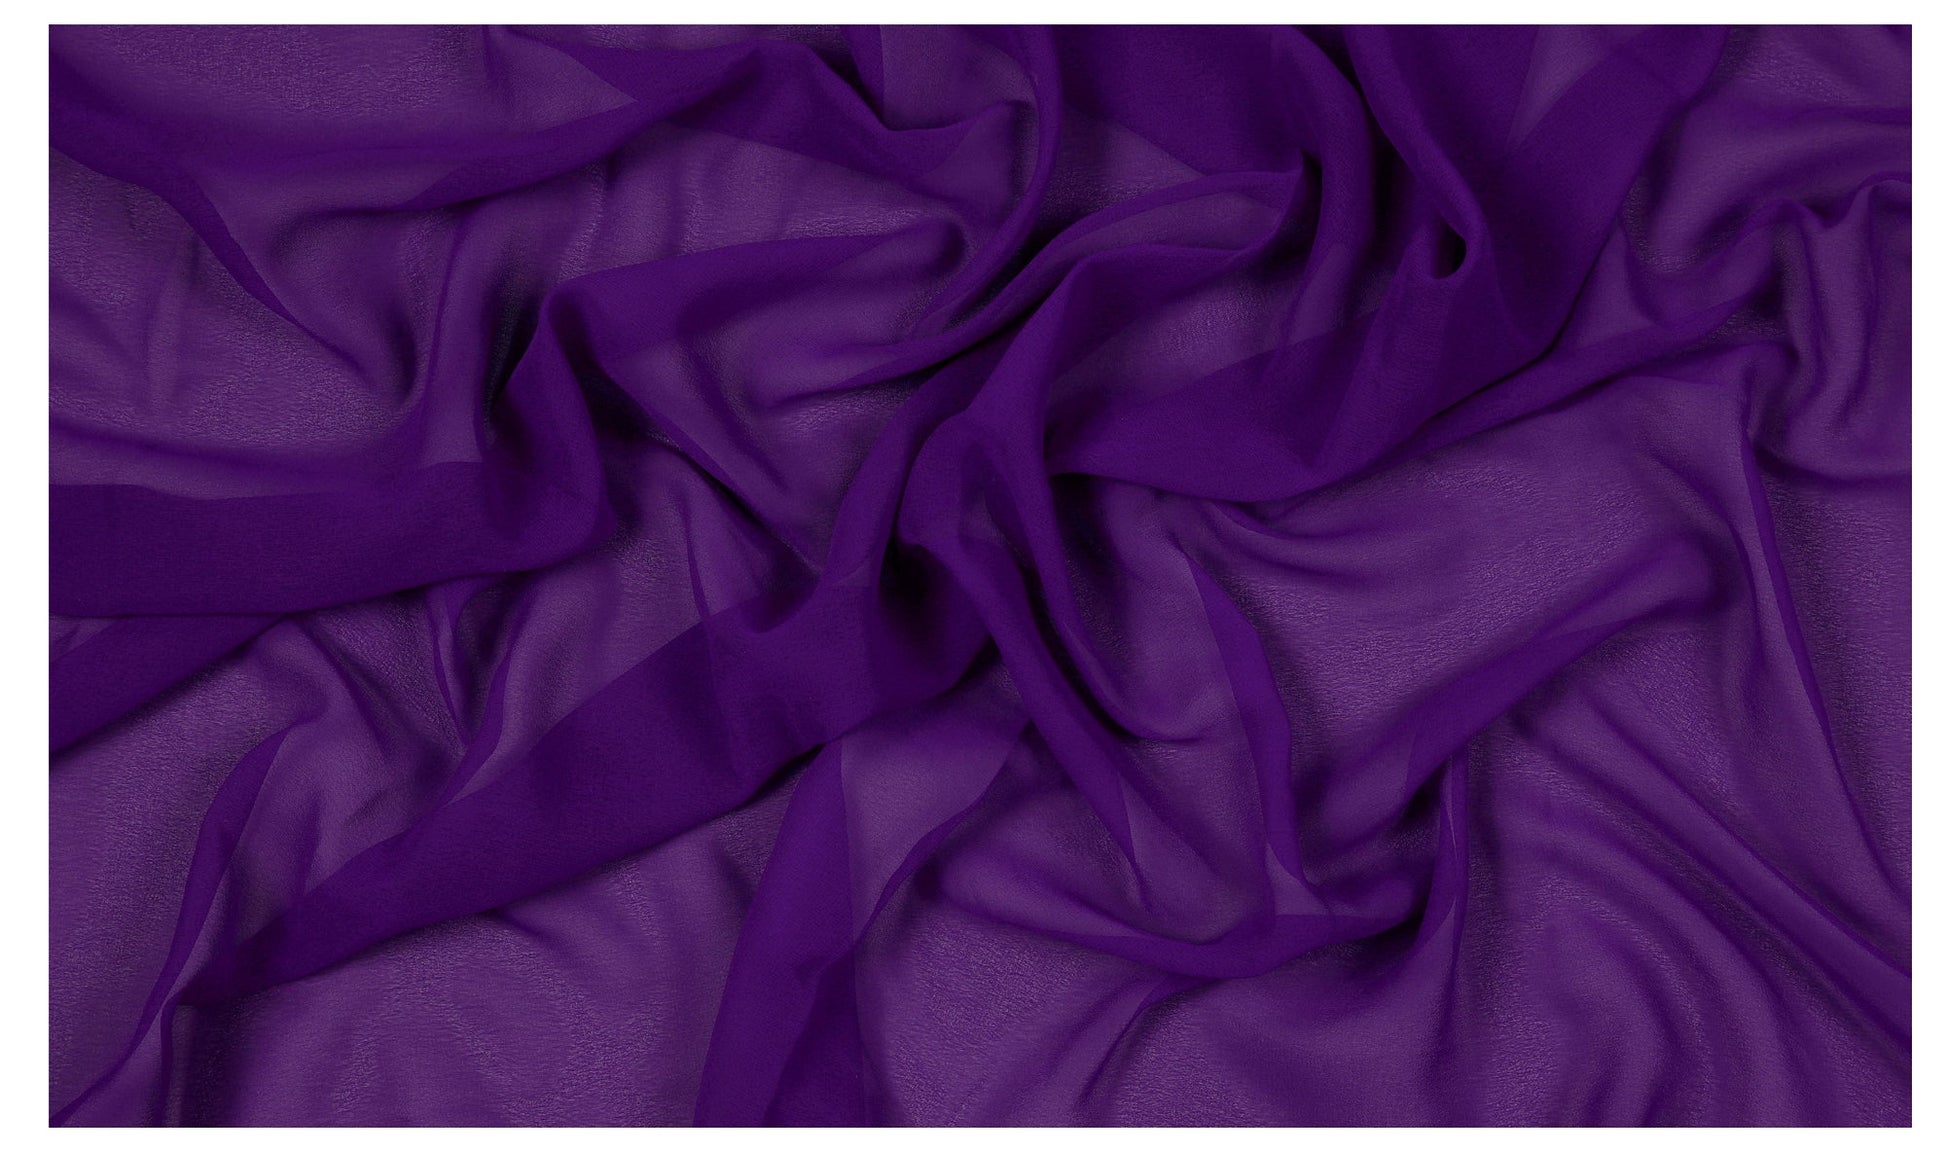 Cadbury Purple,b8e850d2-9d10-4785-9cff-b463ffb8c9f5